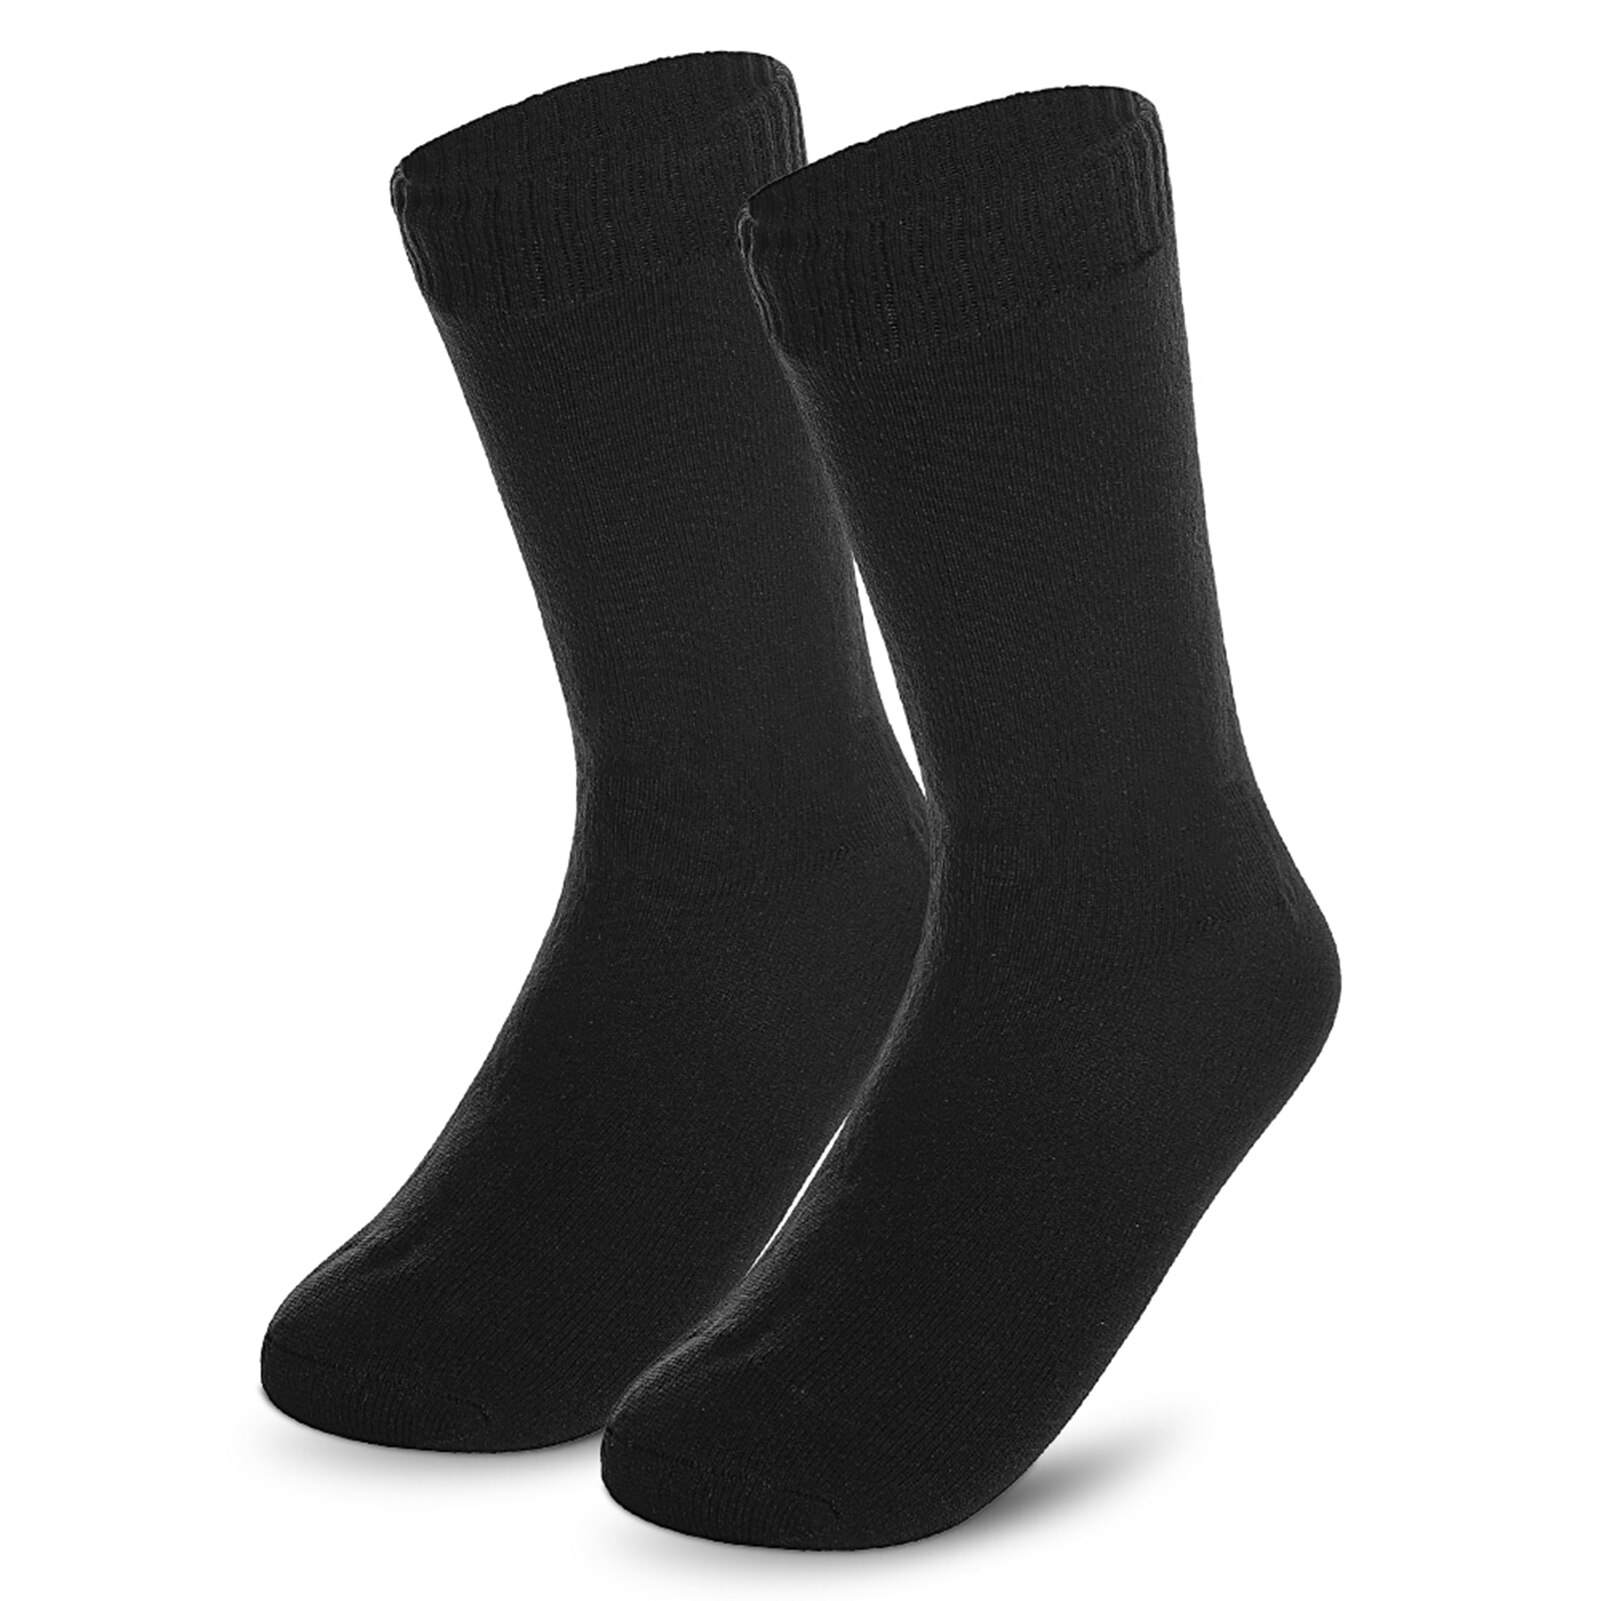 Mænds strømper udendørs sport vandtætte åndbare sokker til mænd kvinder udendørs sport vandring skiløb trekking sokker  fy005